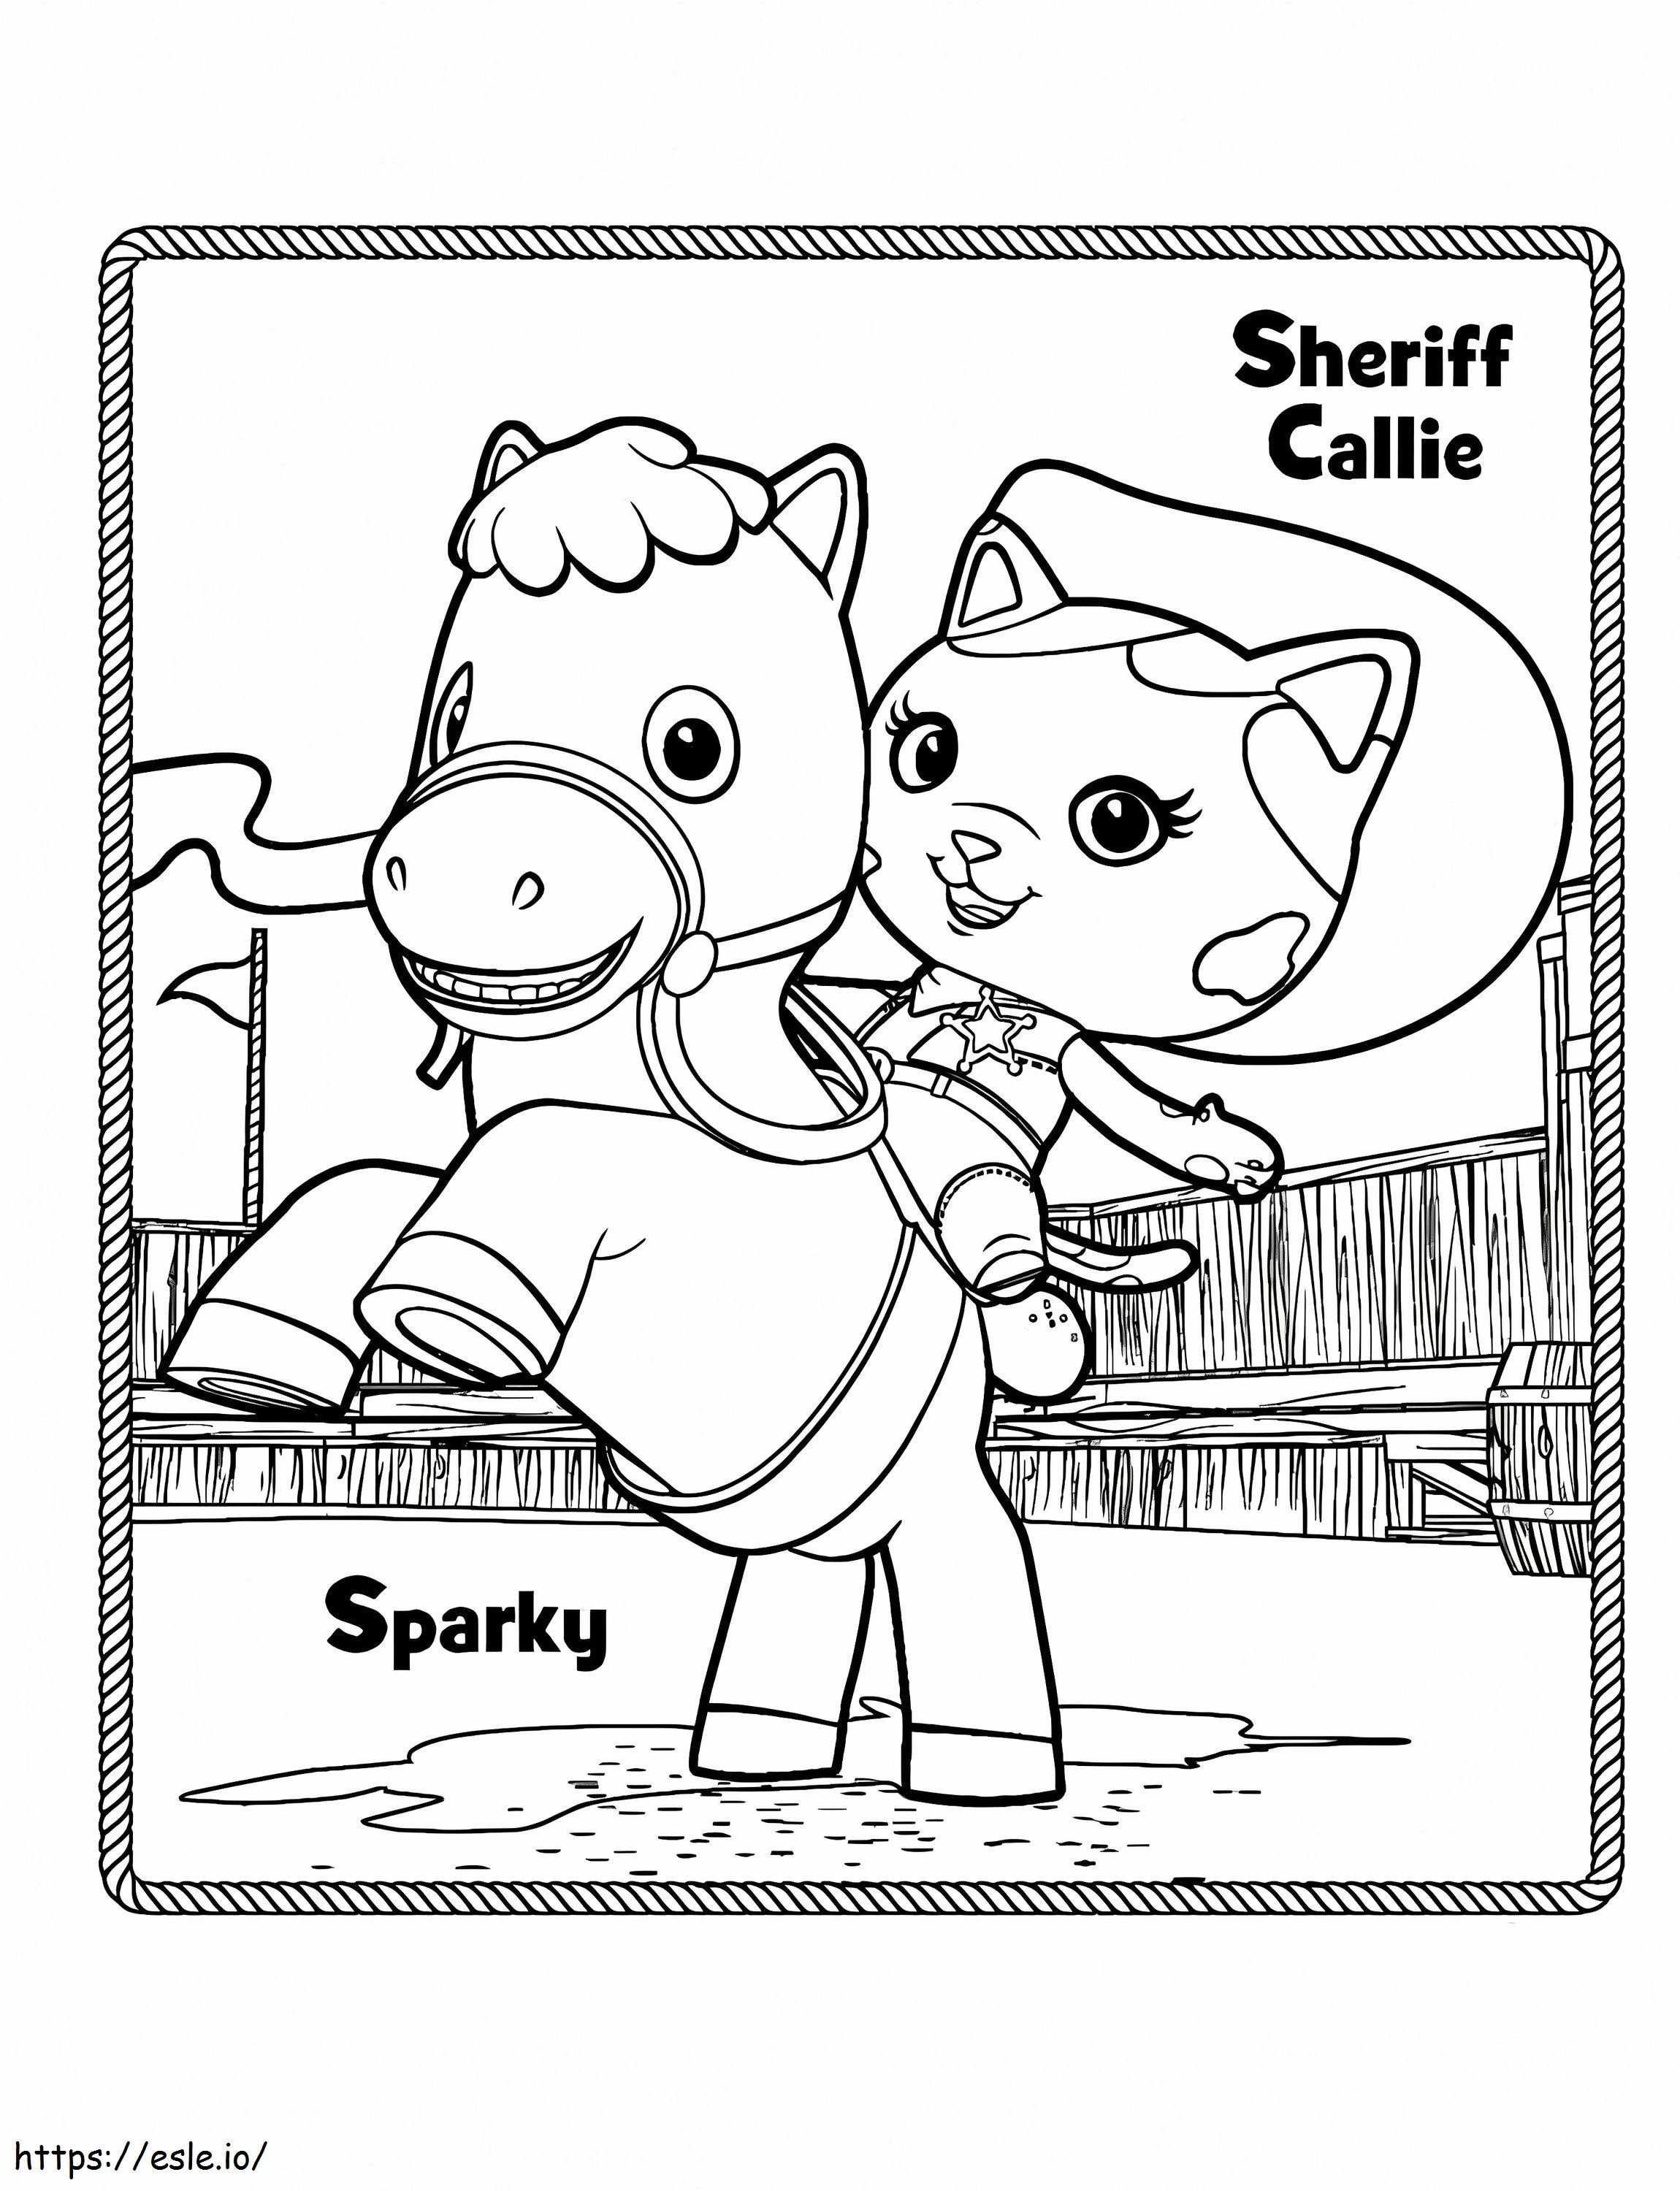 Sparky y la sheriff callie para colorear